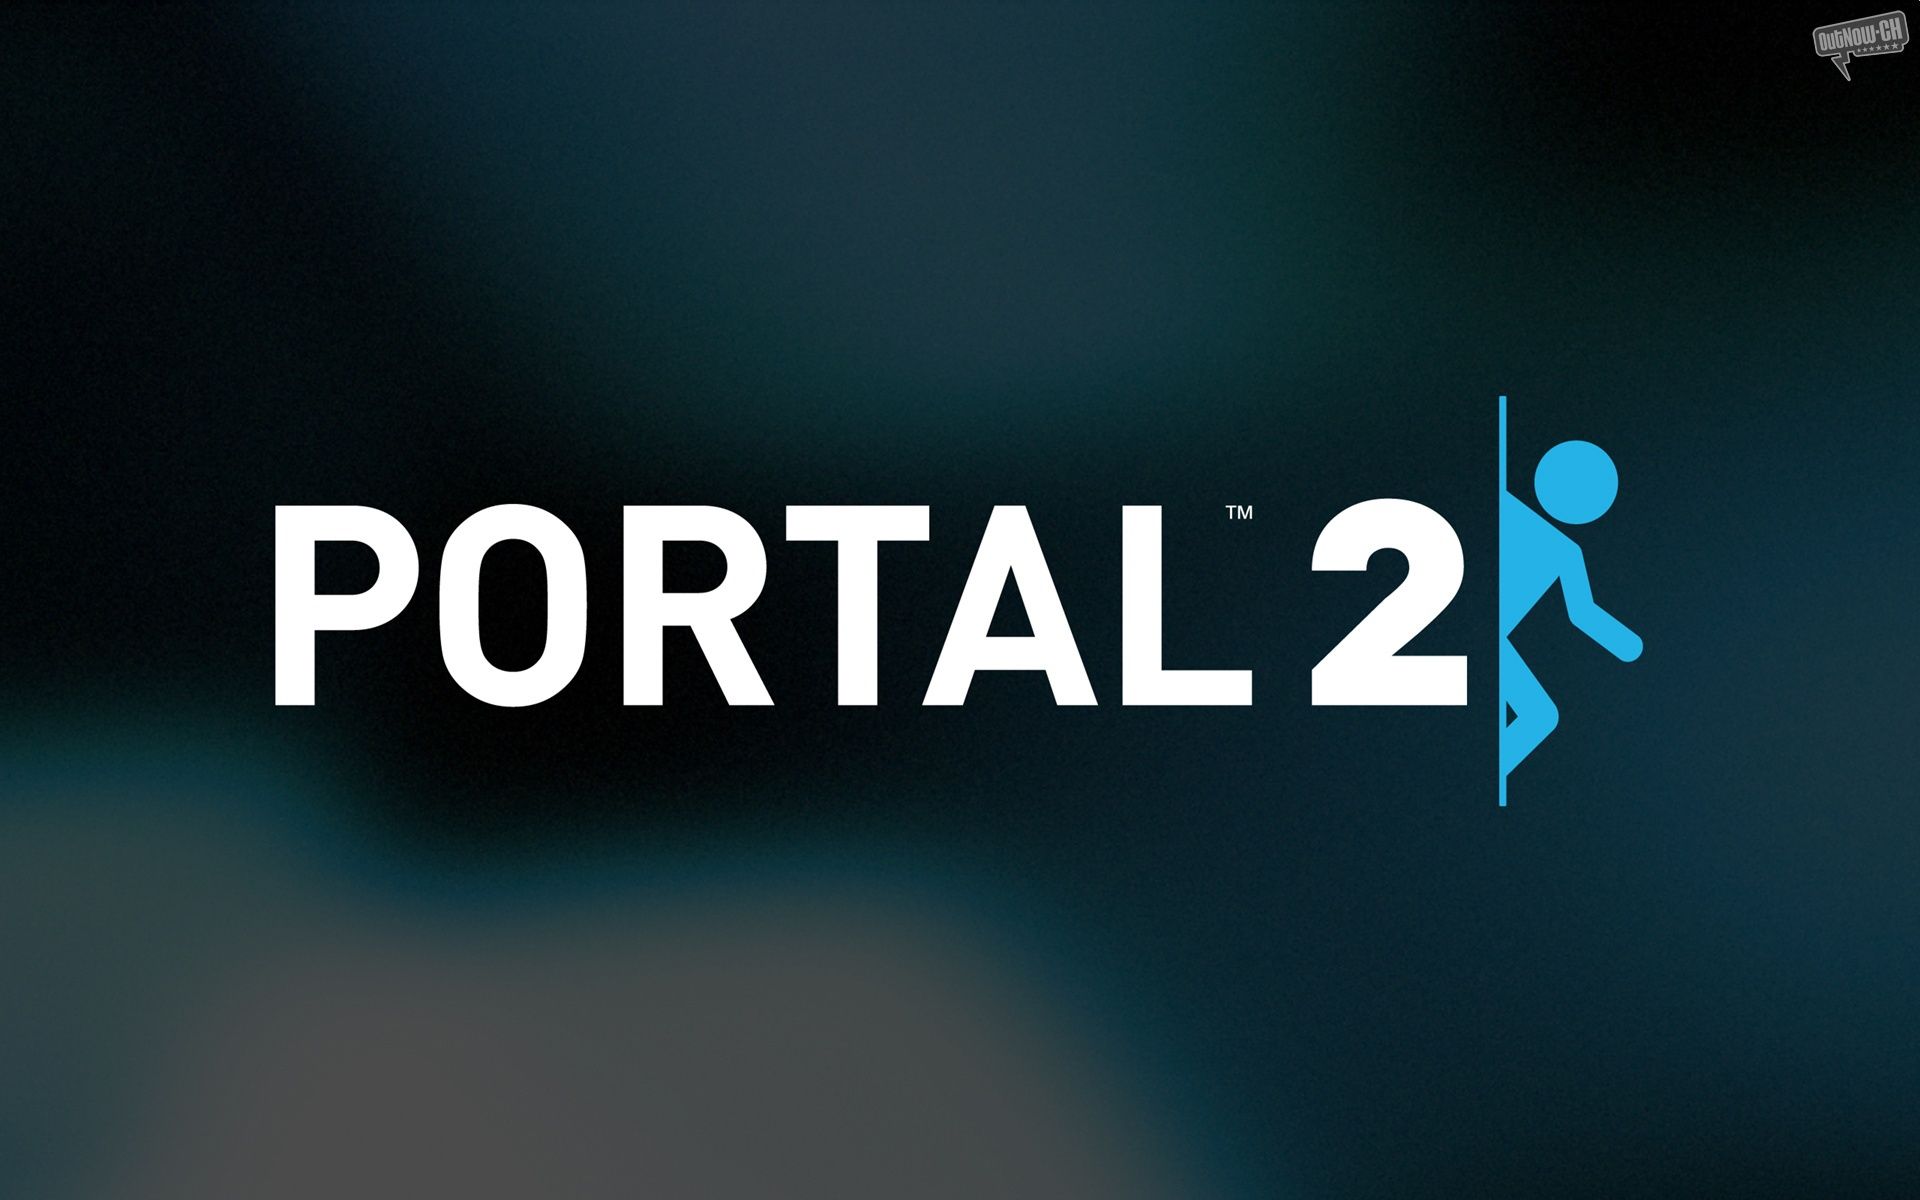 Portal 2 desktop PC and Mac wallpaper